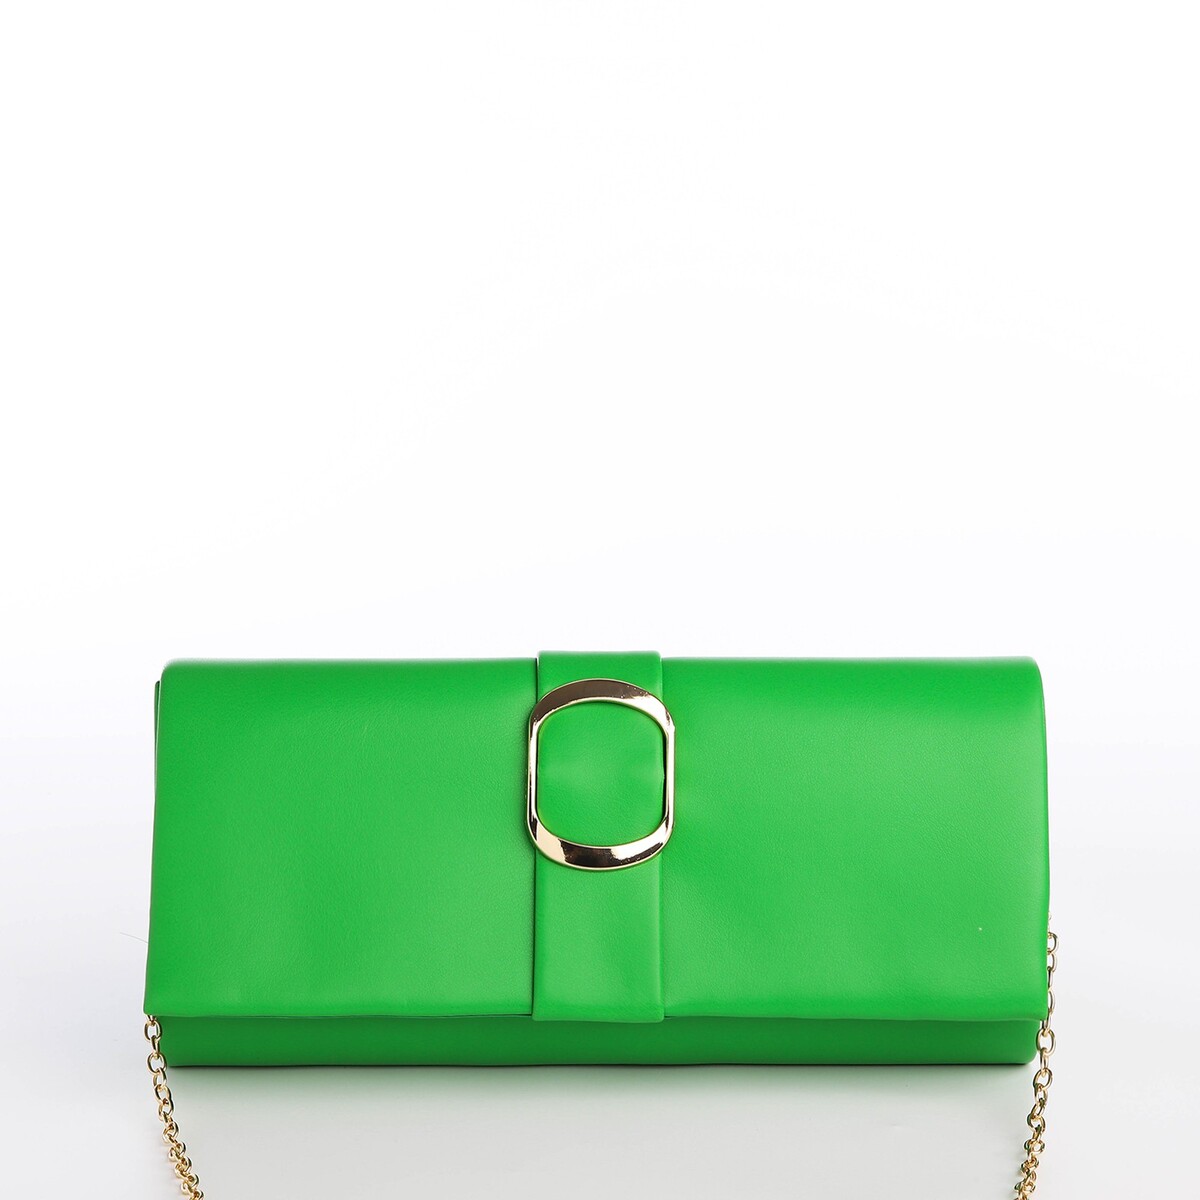 Сумка-клатч на магните, цвет зеленый сумка клатч на магните длинный ремень зеленый